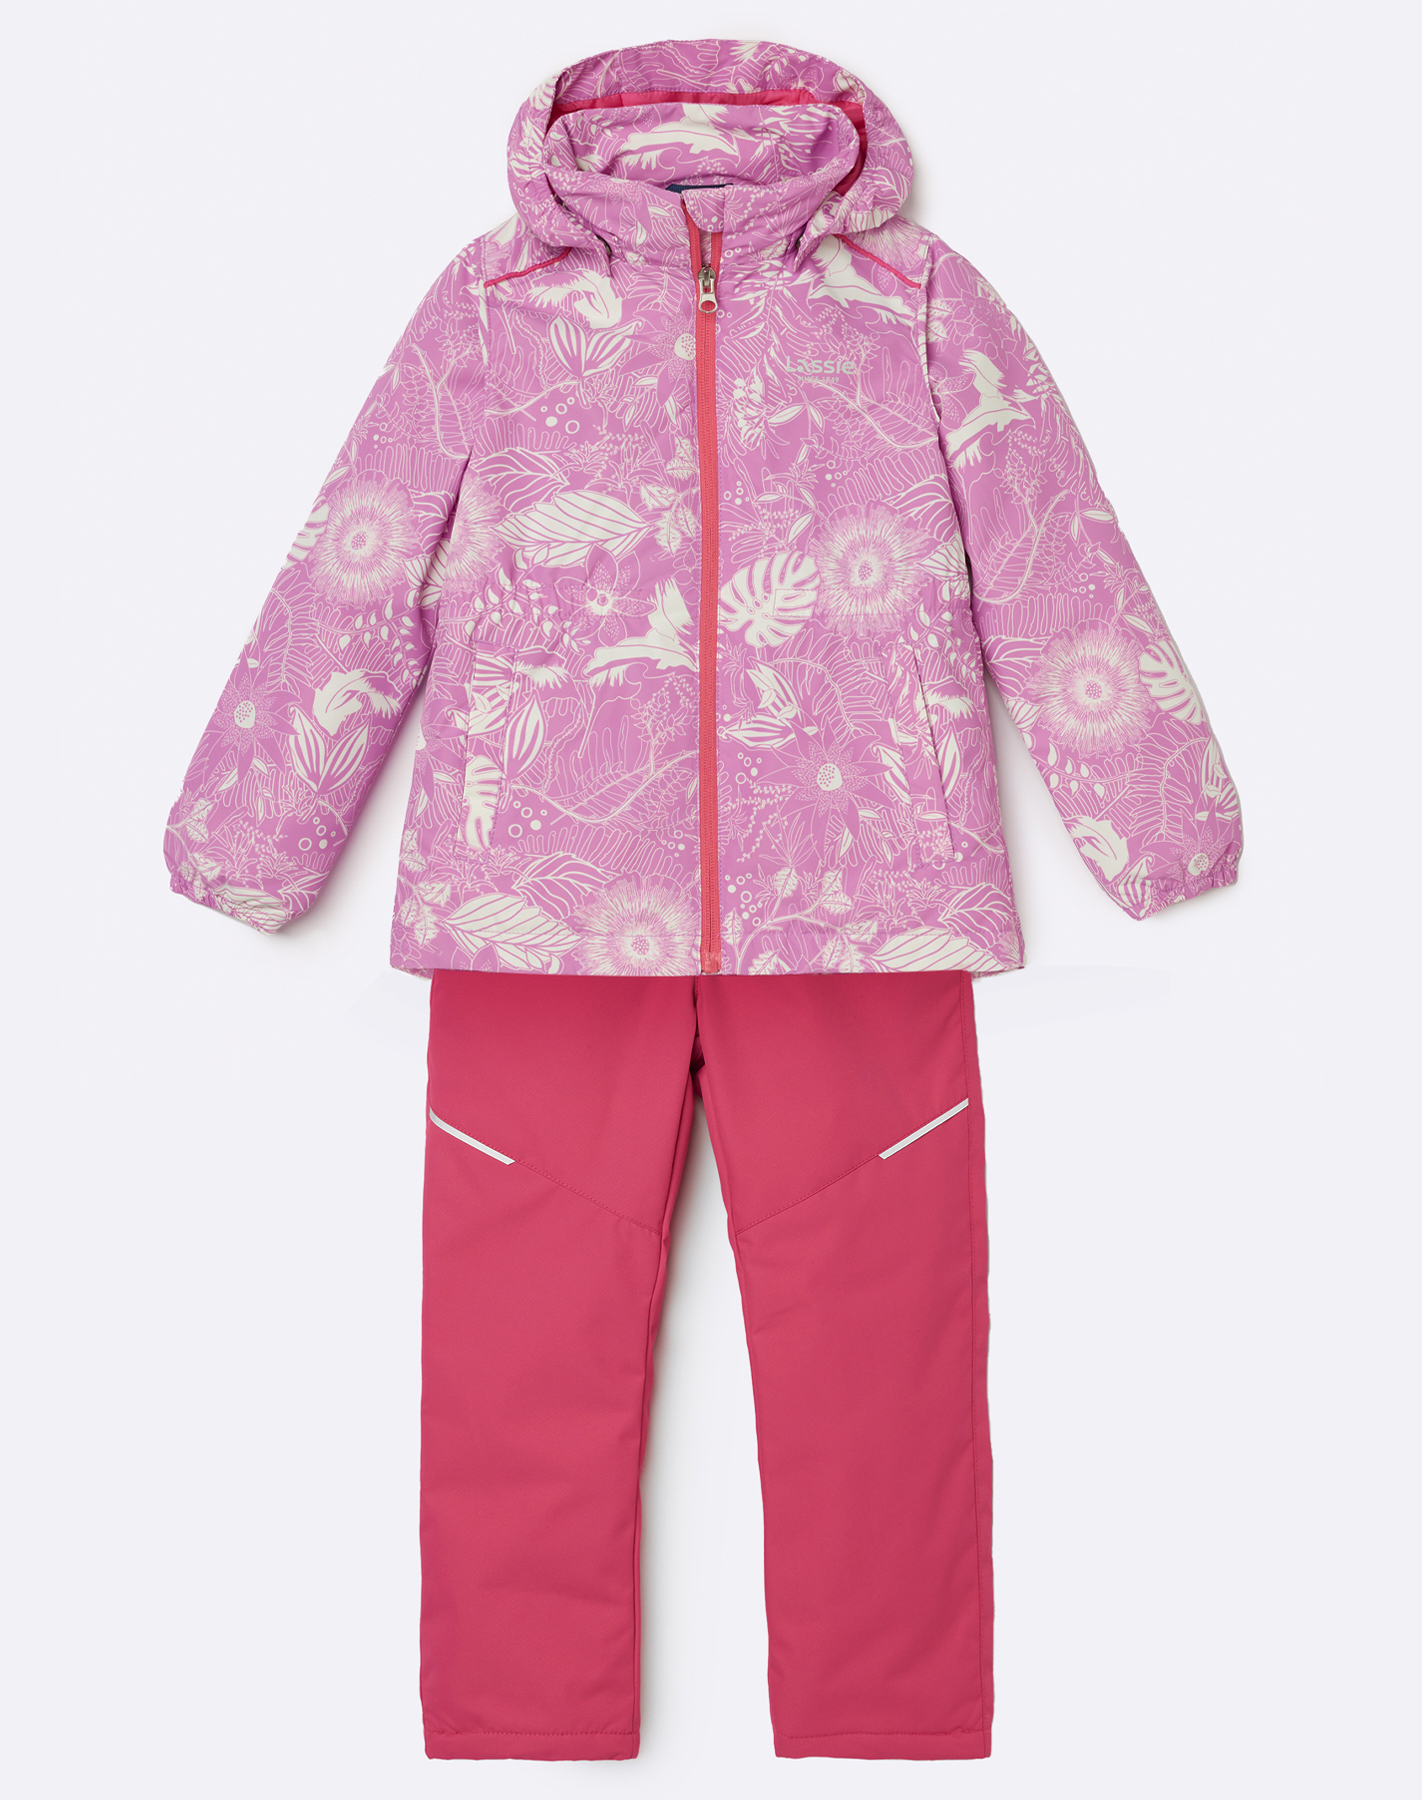 Комплект верхней одежды детский Lassie Manna 7100042A, с рисунком  розовый, 140